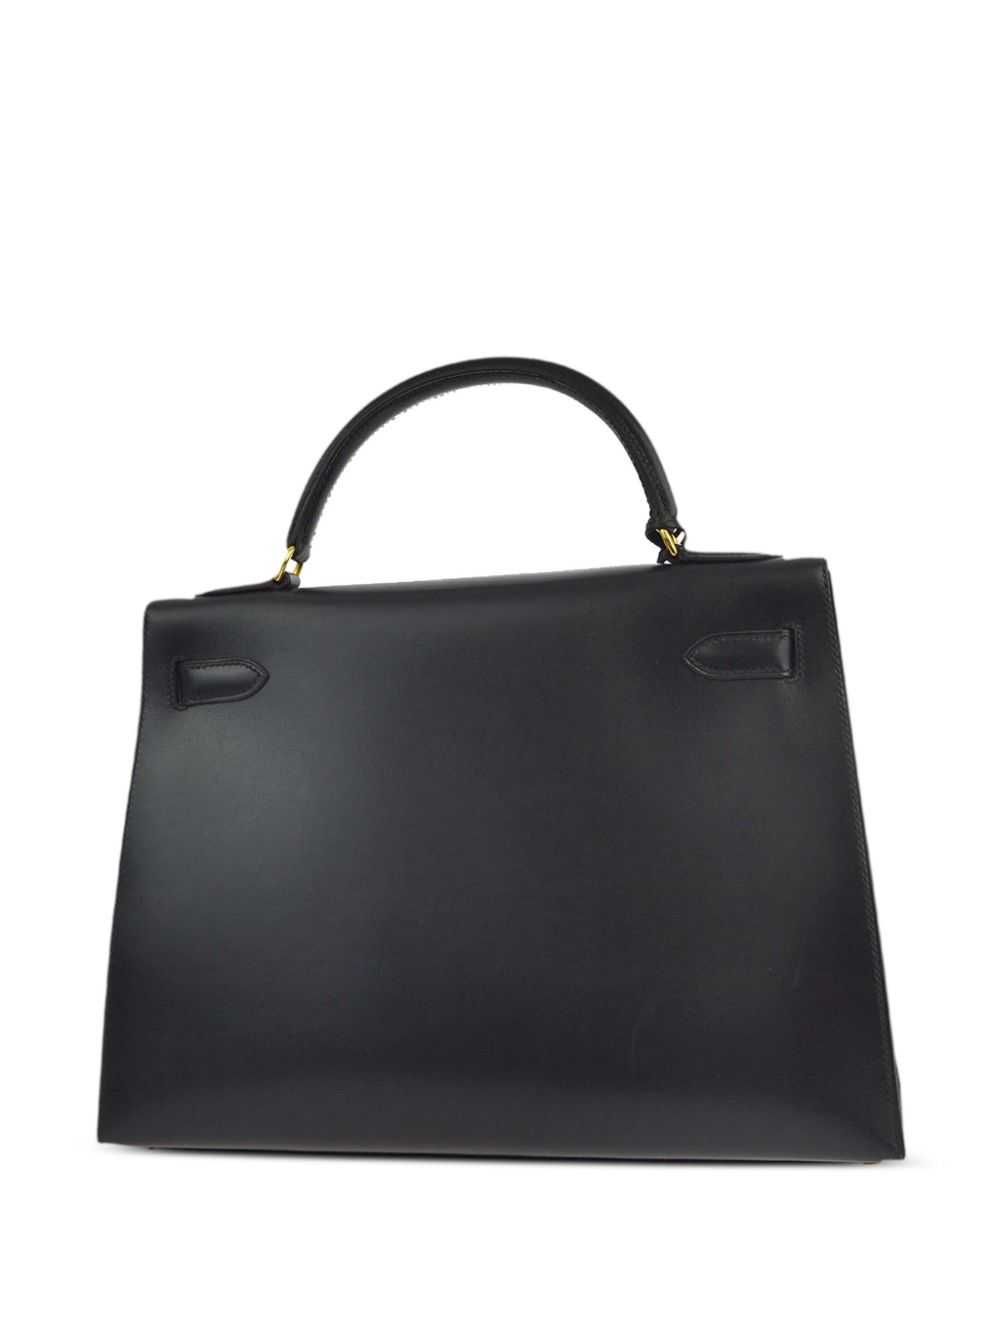 Hermès Pre-Owned 1999 Kelly 32 Sellier handbag - … - image 2